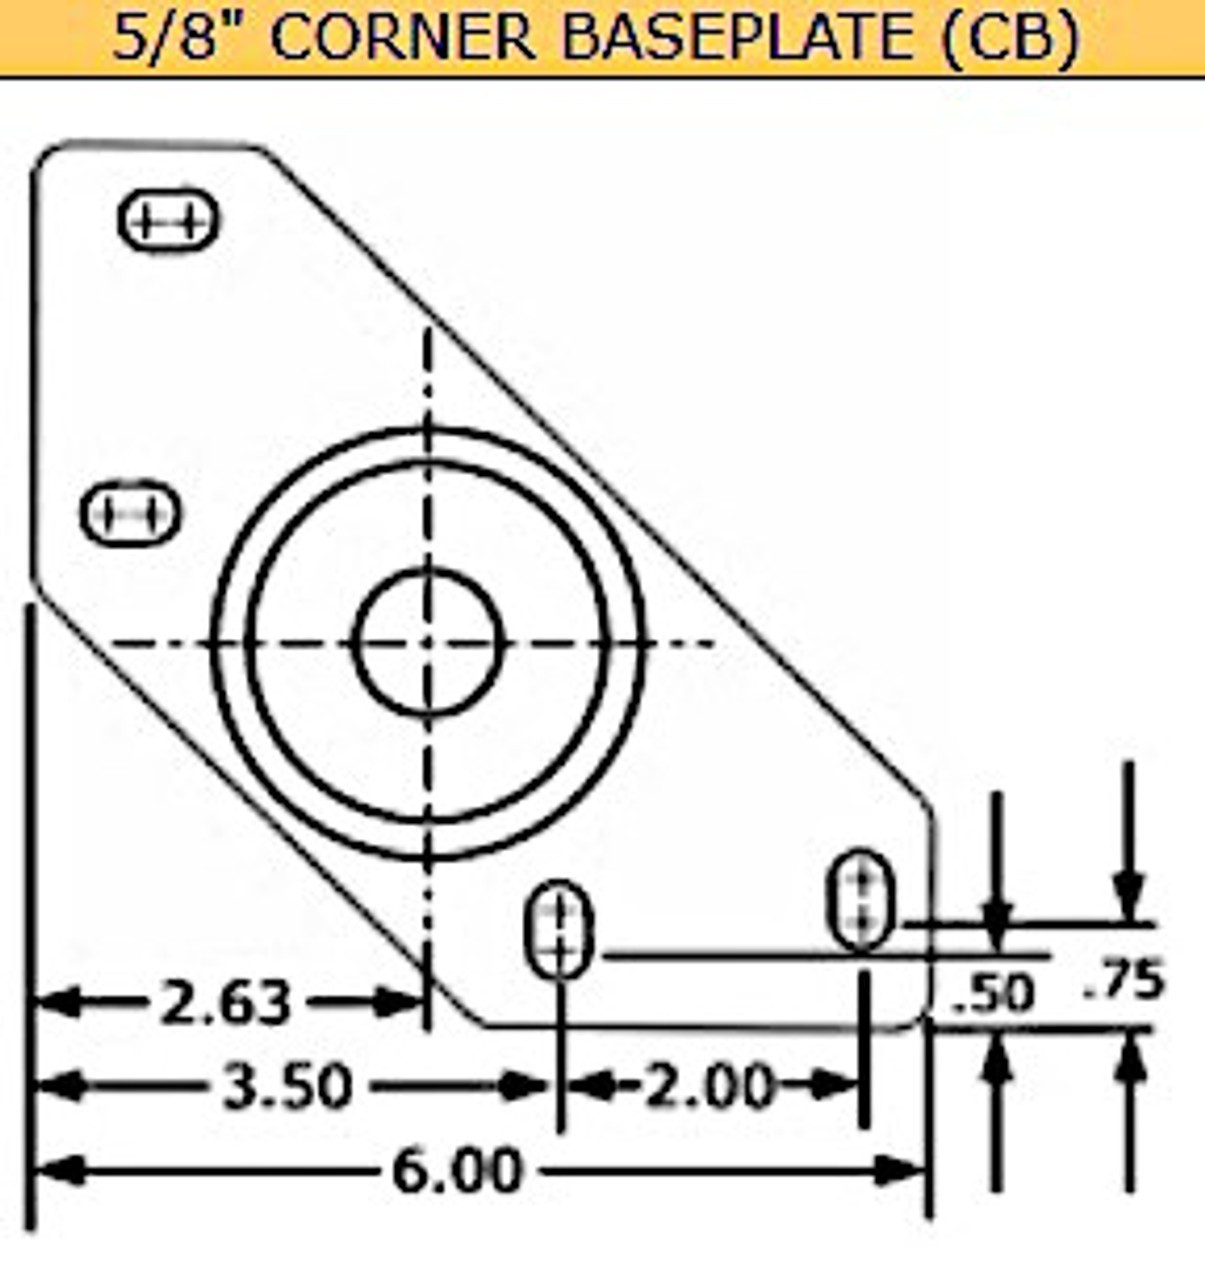 LM6311-CB-BS 5/8-11 Leveler Mount: Corner Baseplate, Brass Insert